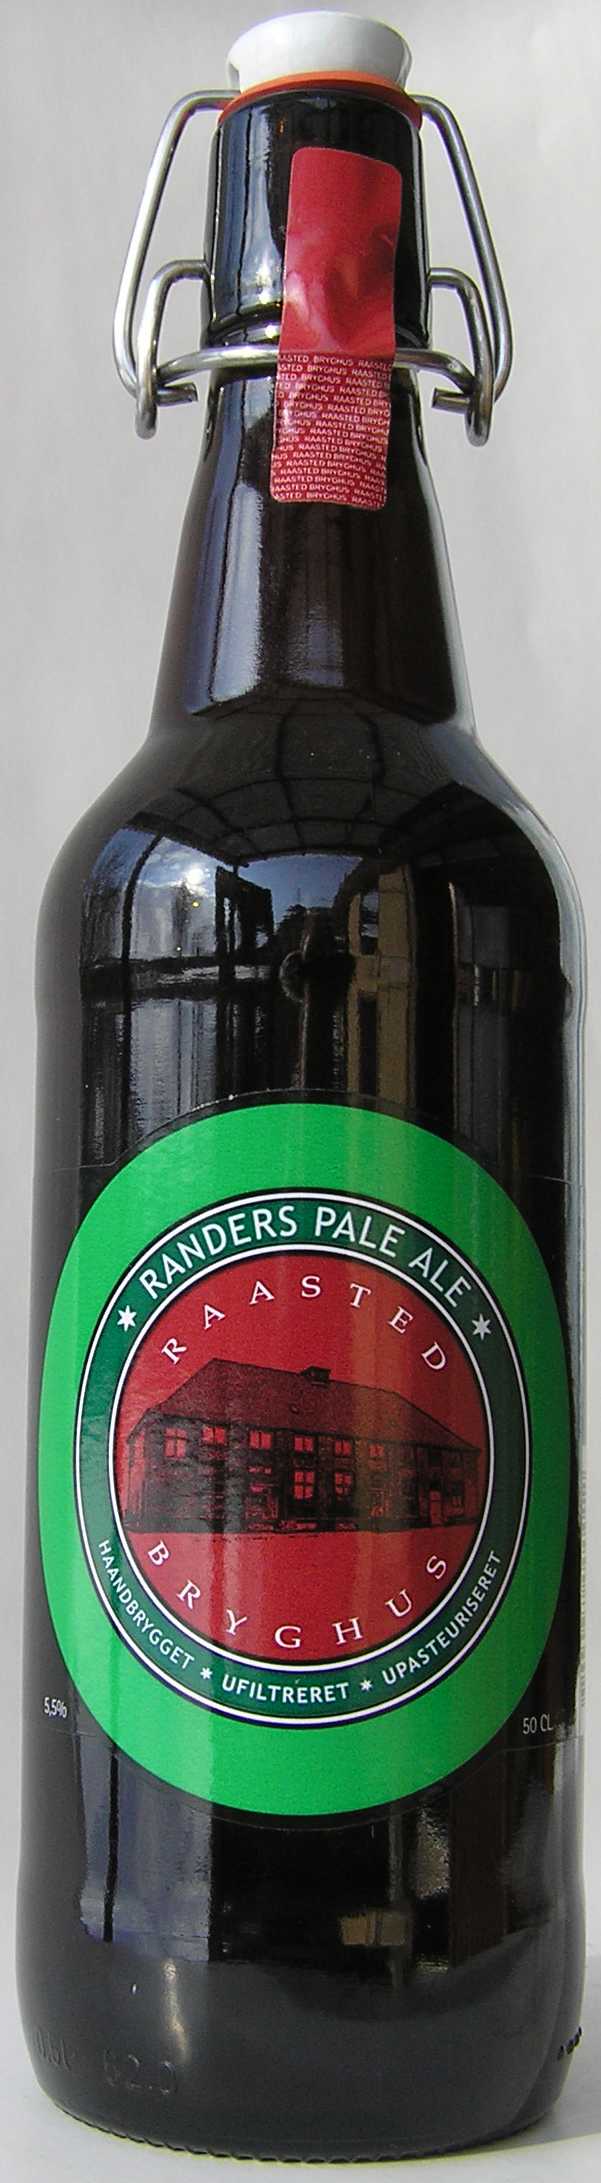 Raasted Randers Pale Ale